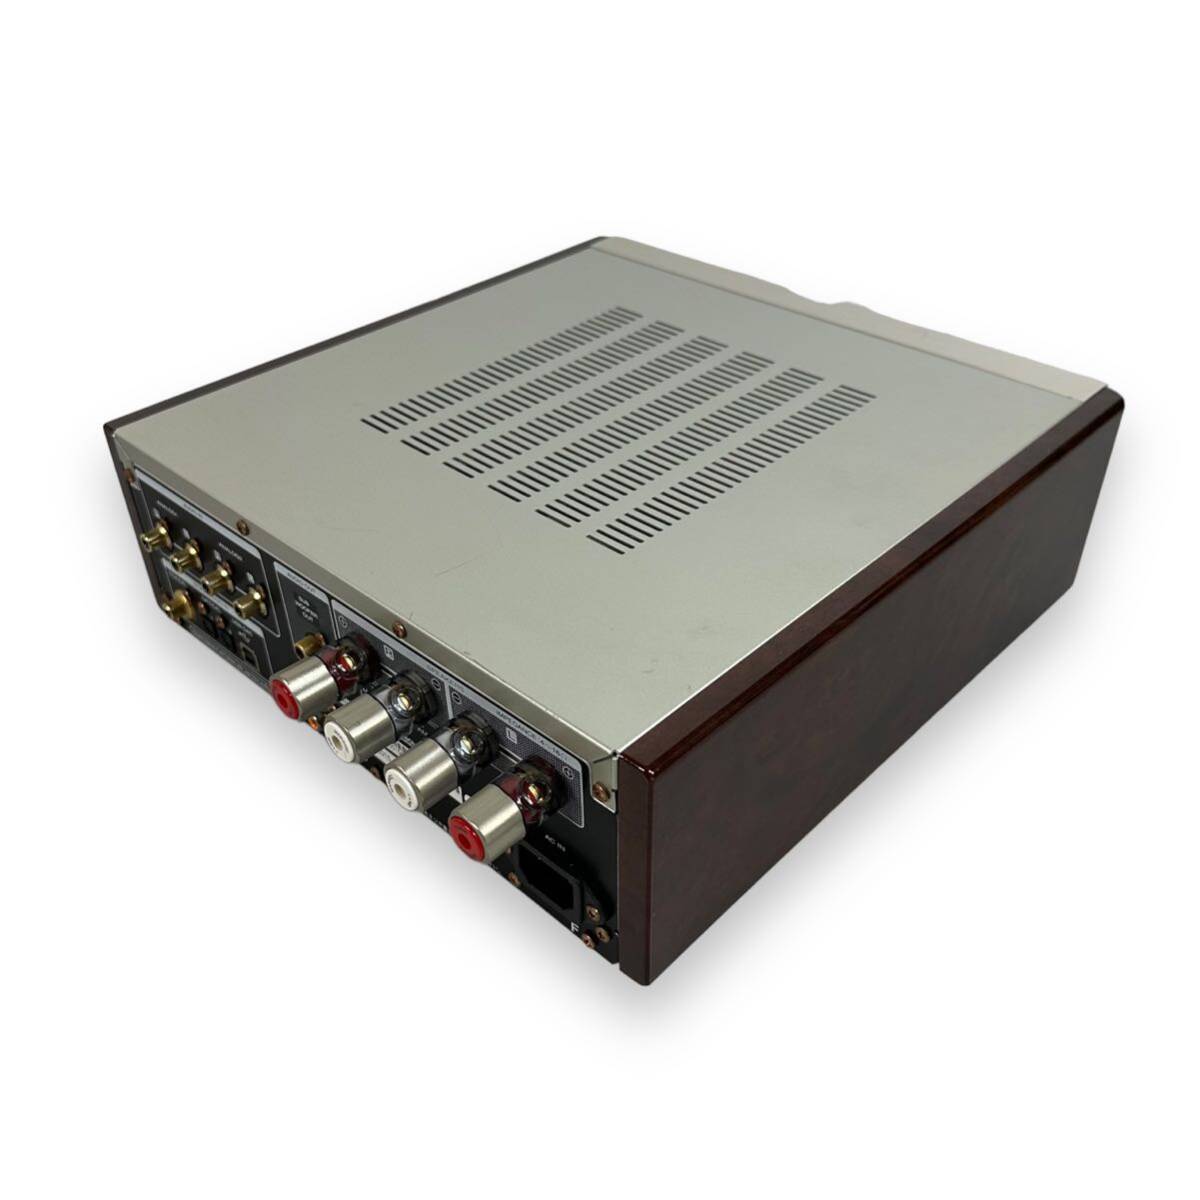 [ превосходный товар ] Marantz Marantz HD-AMP1 основной предусилитель в высоком разрешени источник звука соответствует USB-DAC серебряный Gold HD-AMP1/FN оригинальная коробка с гарантией 